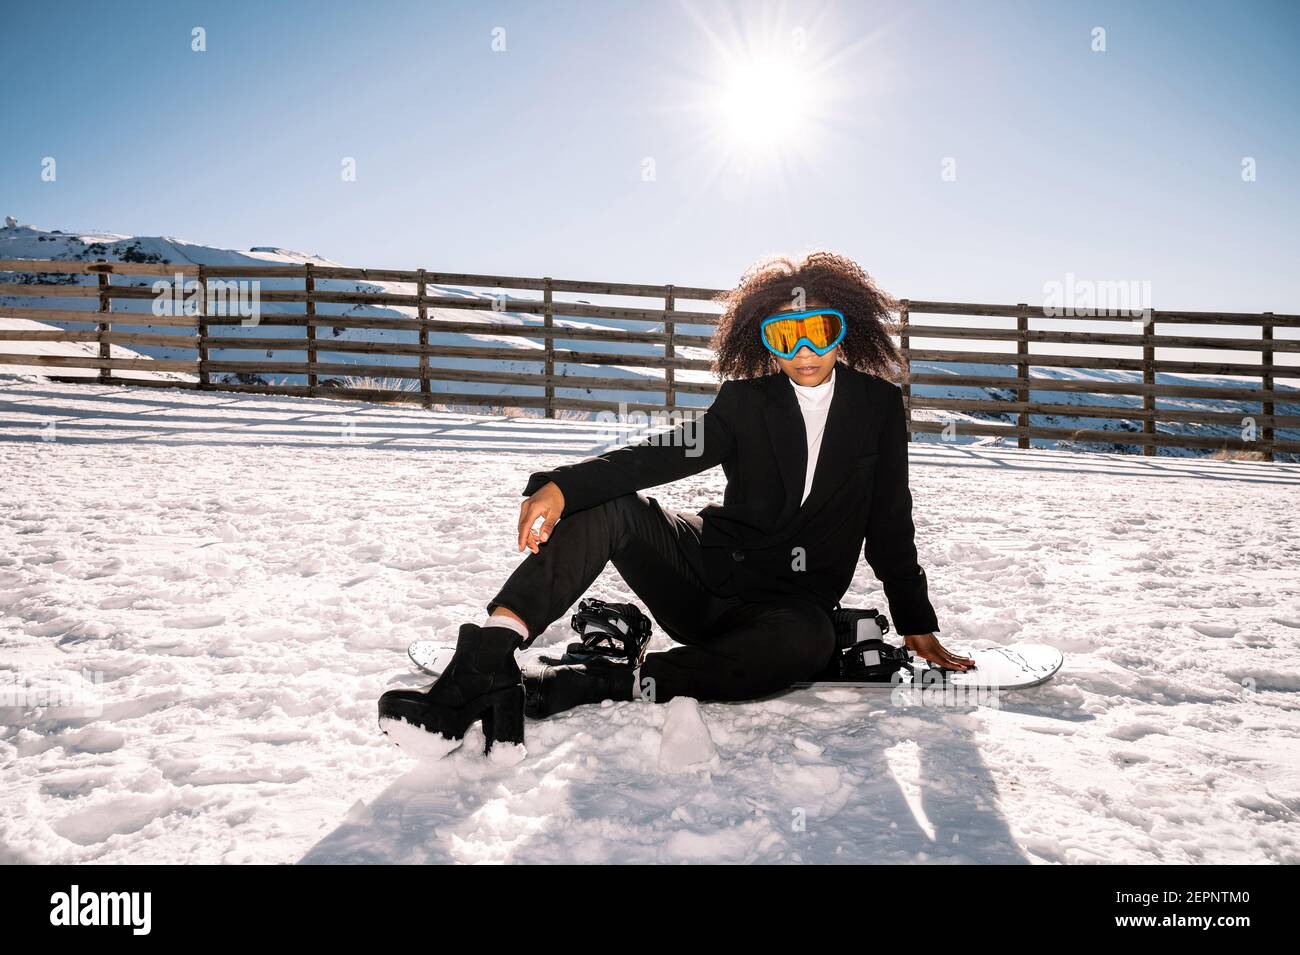 Athlète afro-américain en vêtements à la mode et lunettes de protection assis sur le snowboard tout en regardant l'appareil photo en hiver Banque D'Images